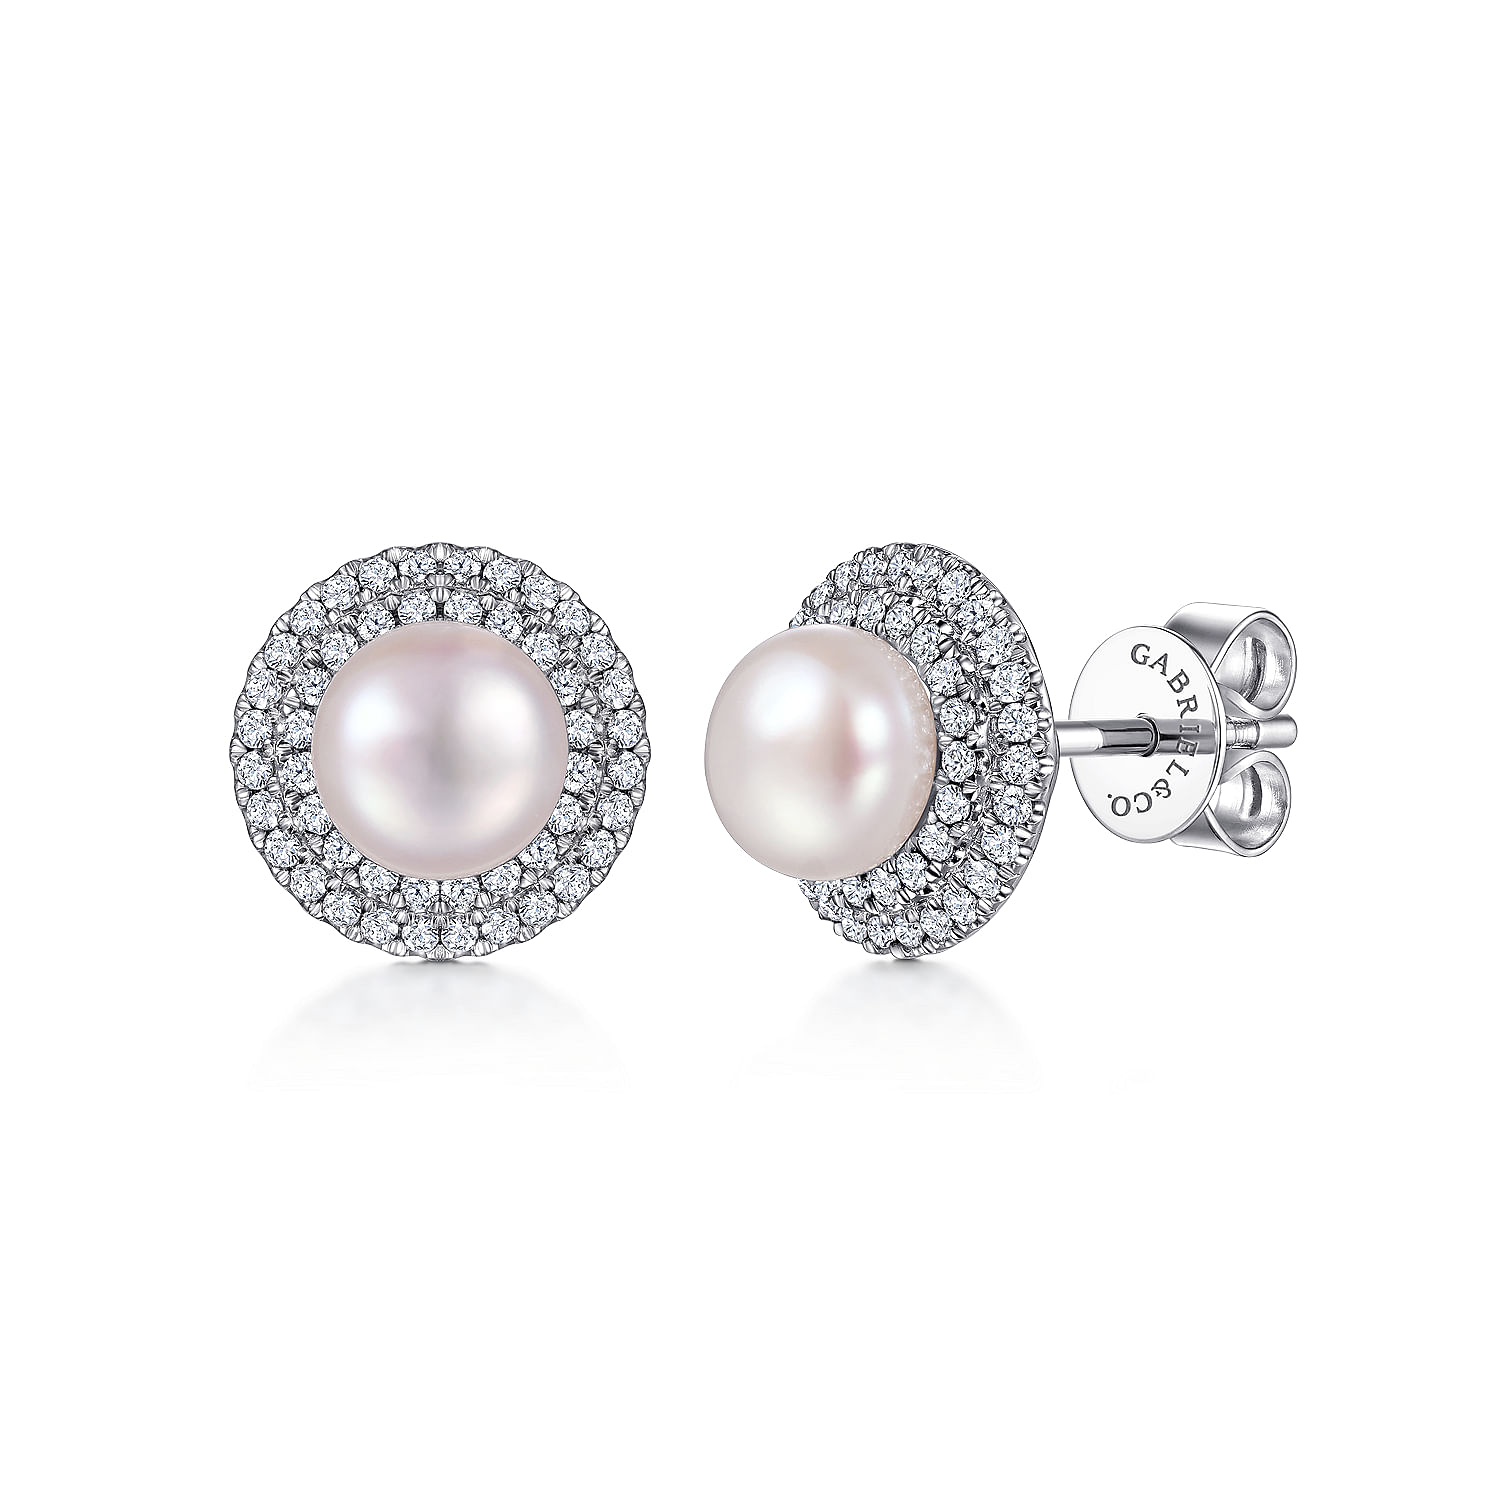 14K White Gold Diamond & Pearl Earrings